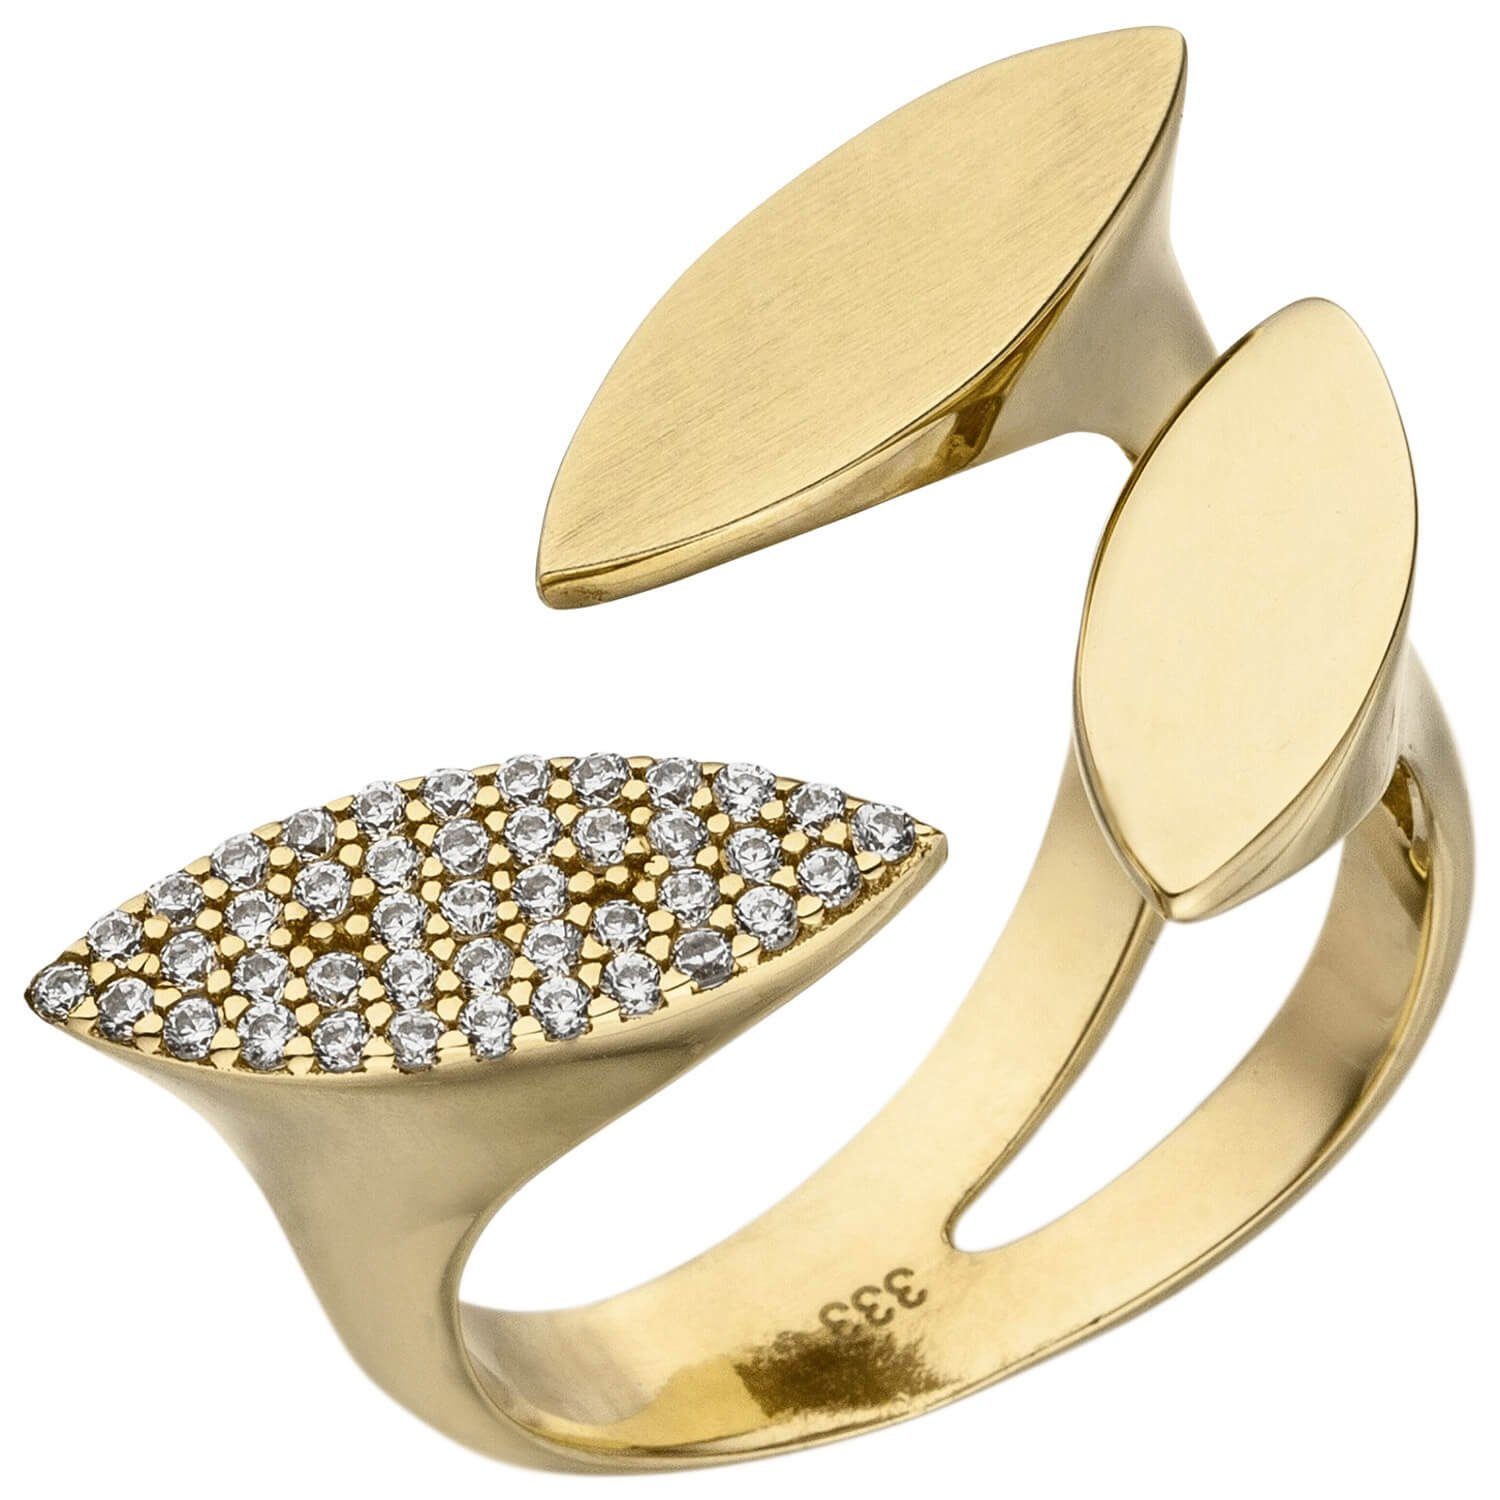 Schmuck Krone Fingerring Offener Ring Damenring mit 40 Zirkonia weiß 333 Gold Gelbgold glänzend B: 21,7mm, Gold 333 | Goldringe